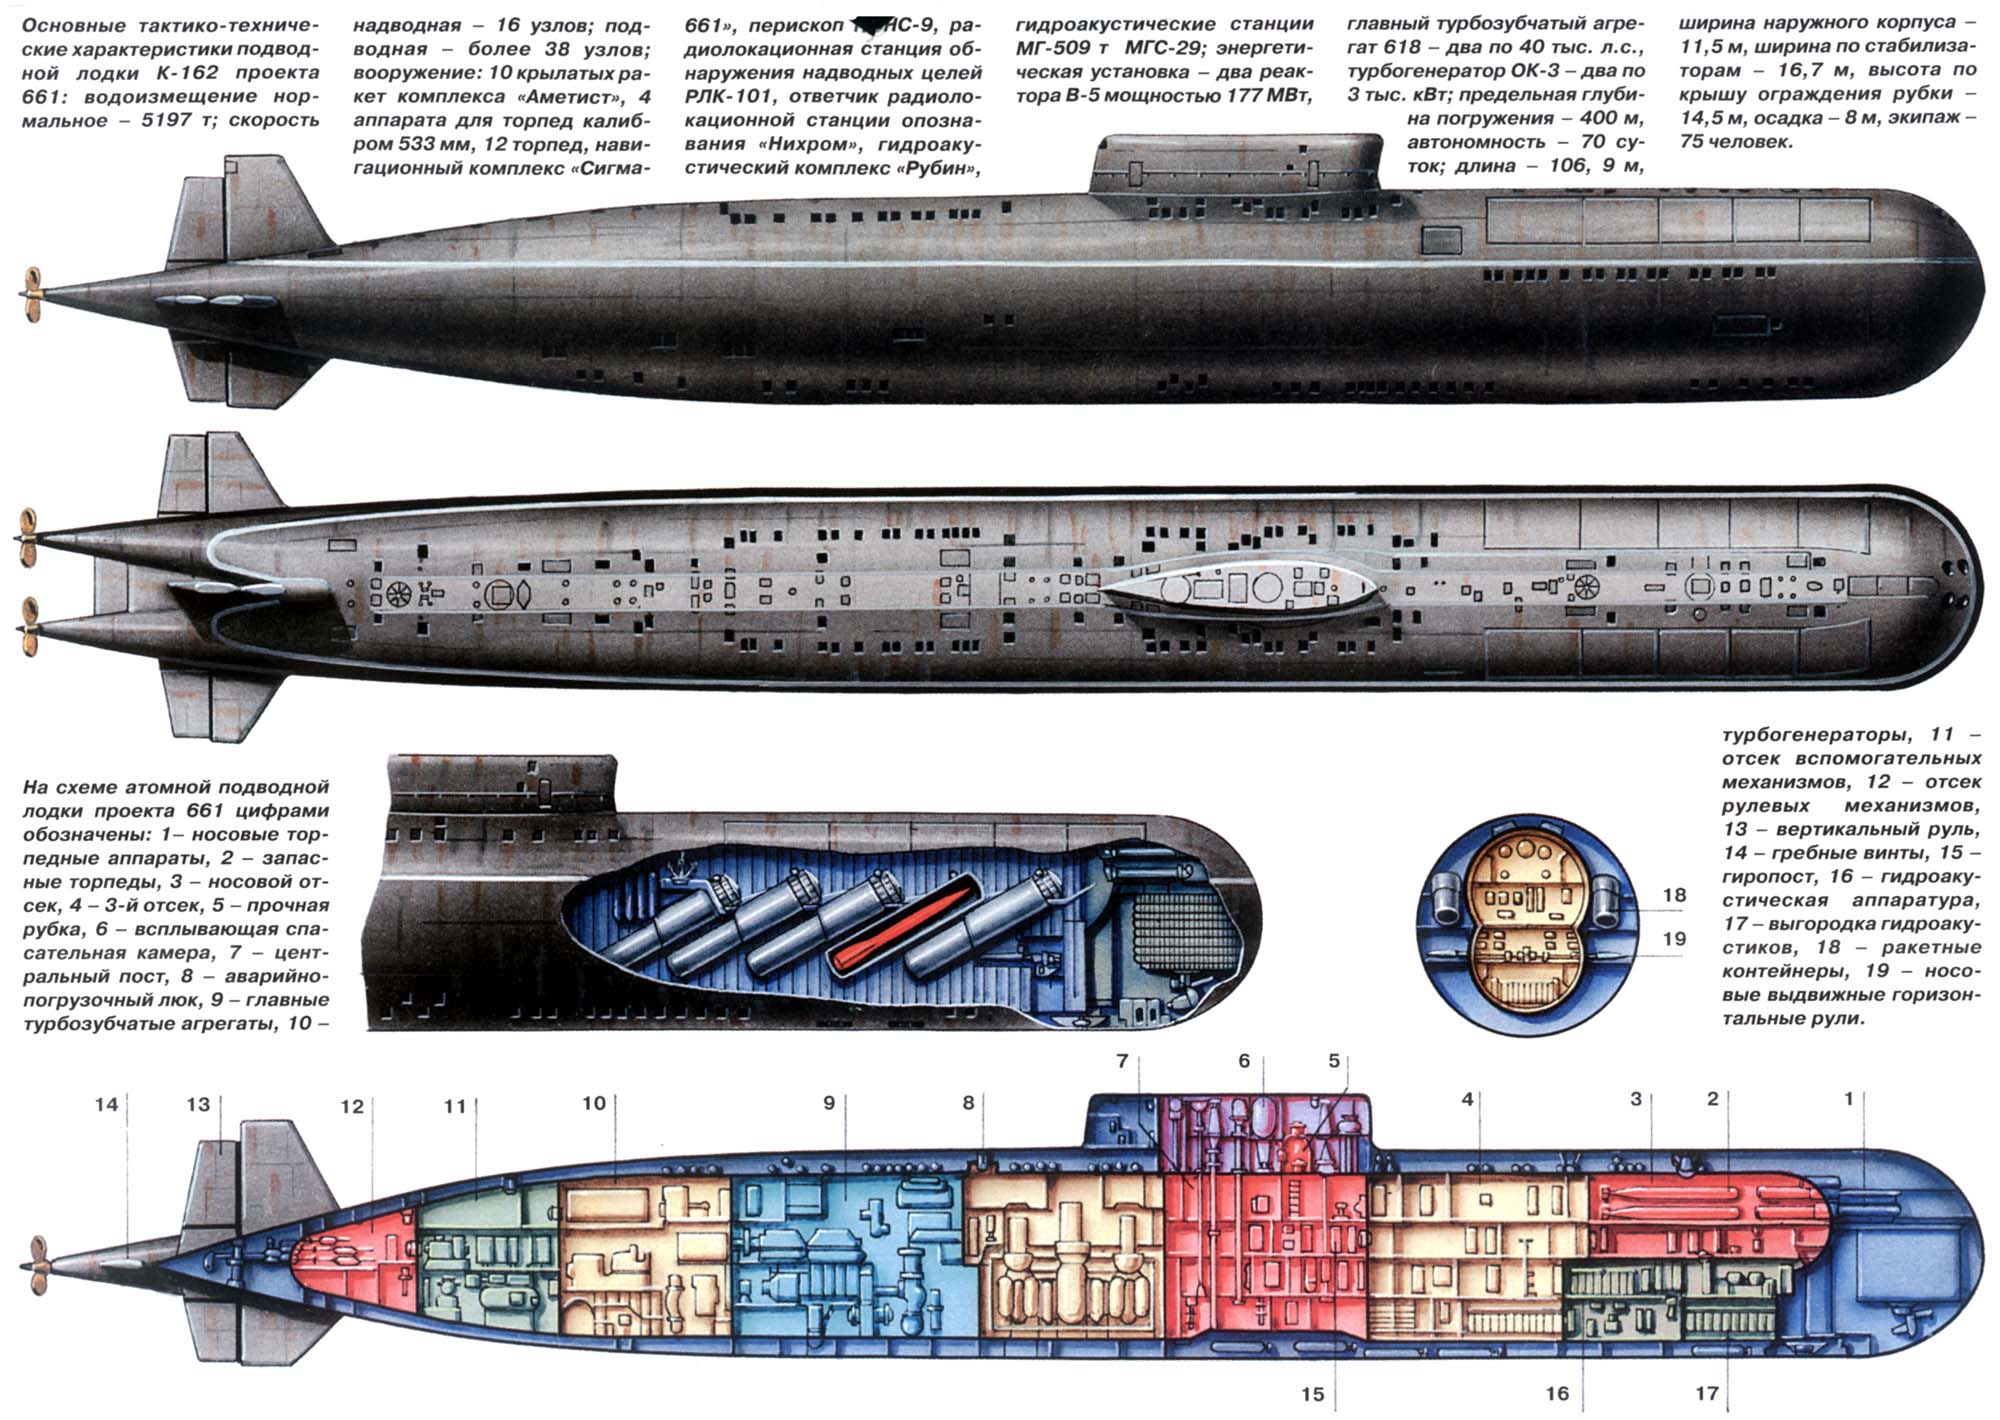 潜艇三视图图片